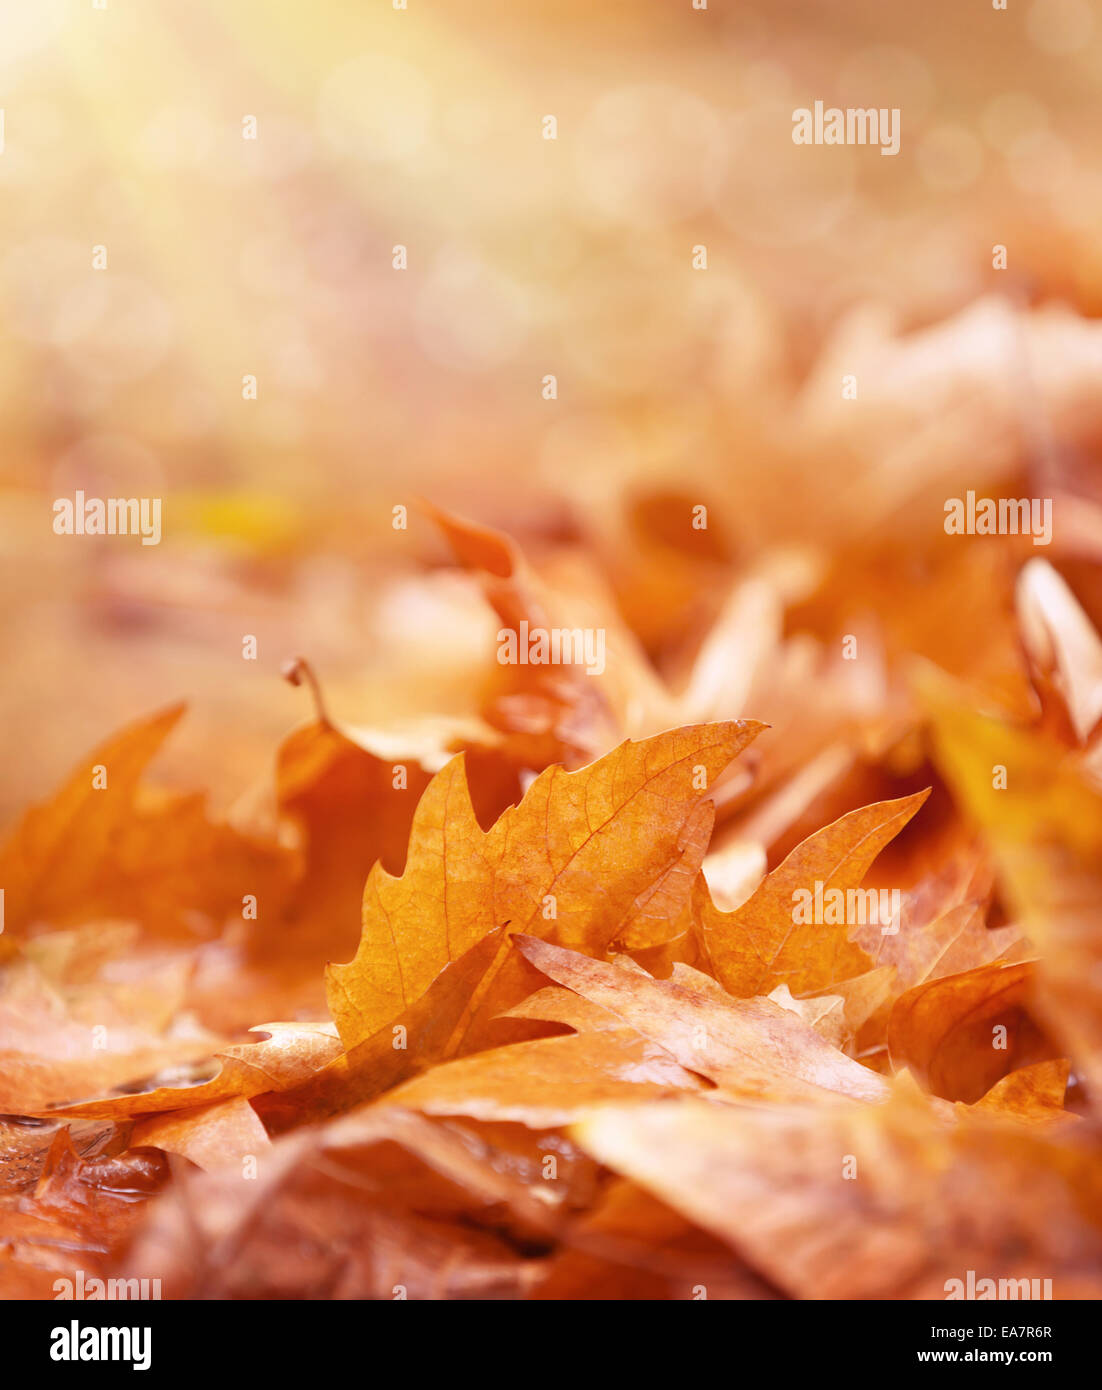 Feuillage sec sur le terrain, résumé automne fond, vieille feuilles d'érable dorées, Soft focus, automne, concept Banque D'Images